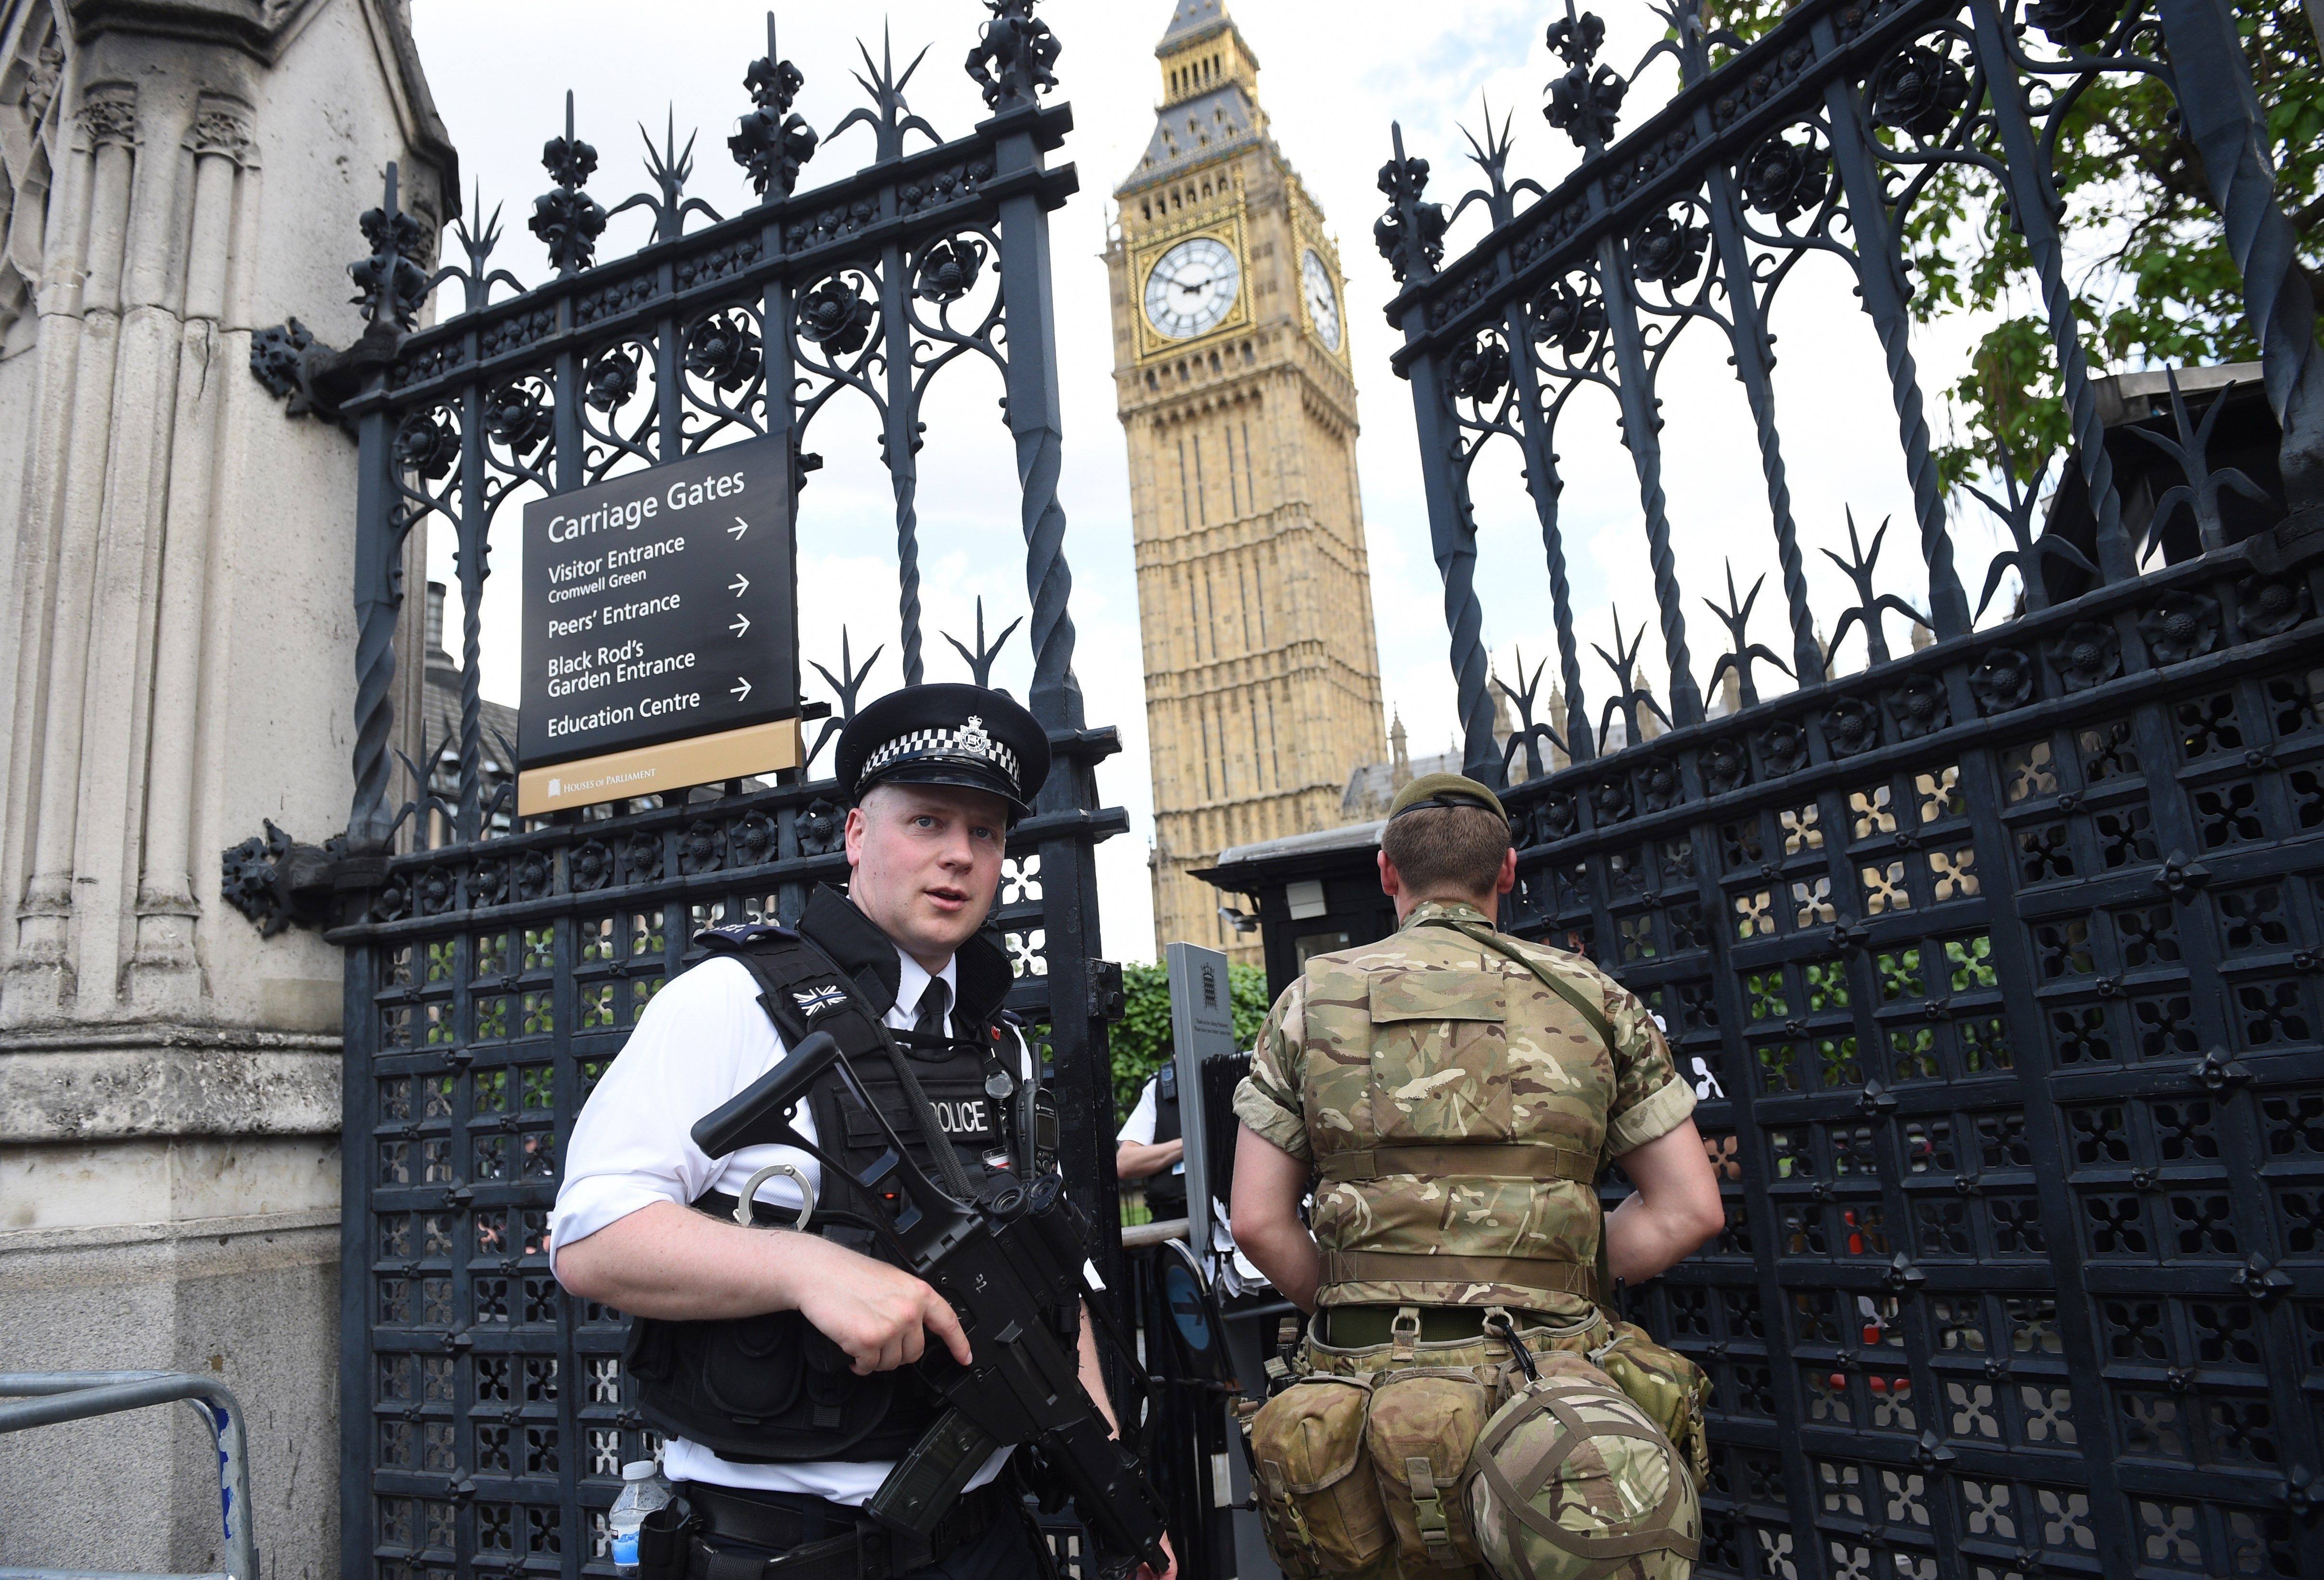 La policia veu indicis de "terrorisme" en l'estavellament d'un cotxe al Parlament britànic